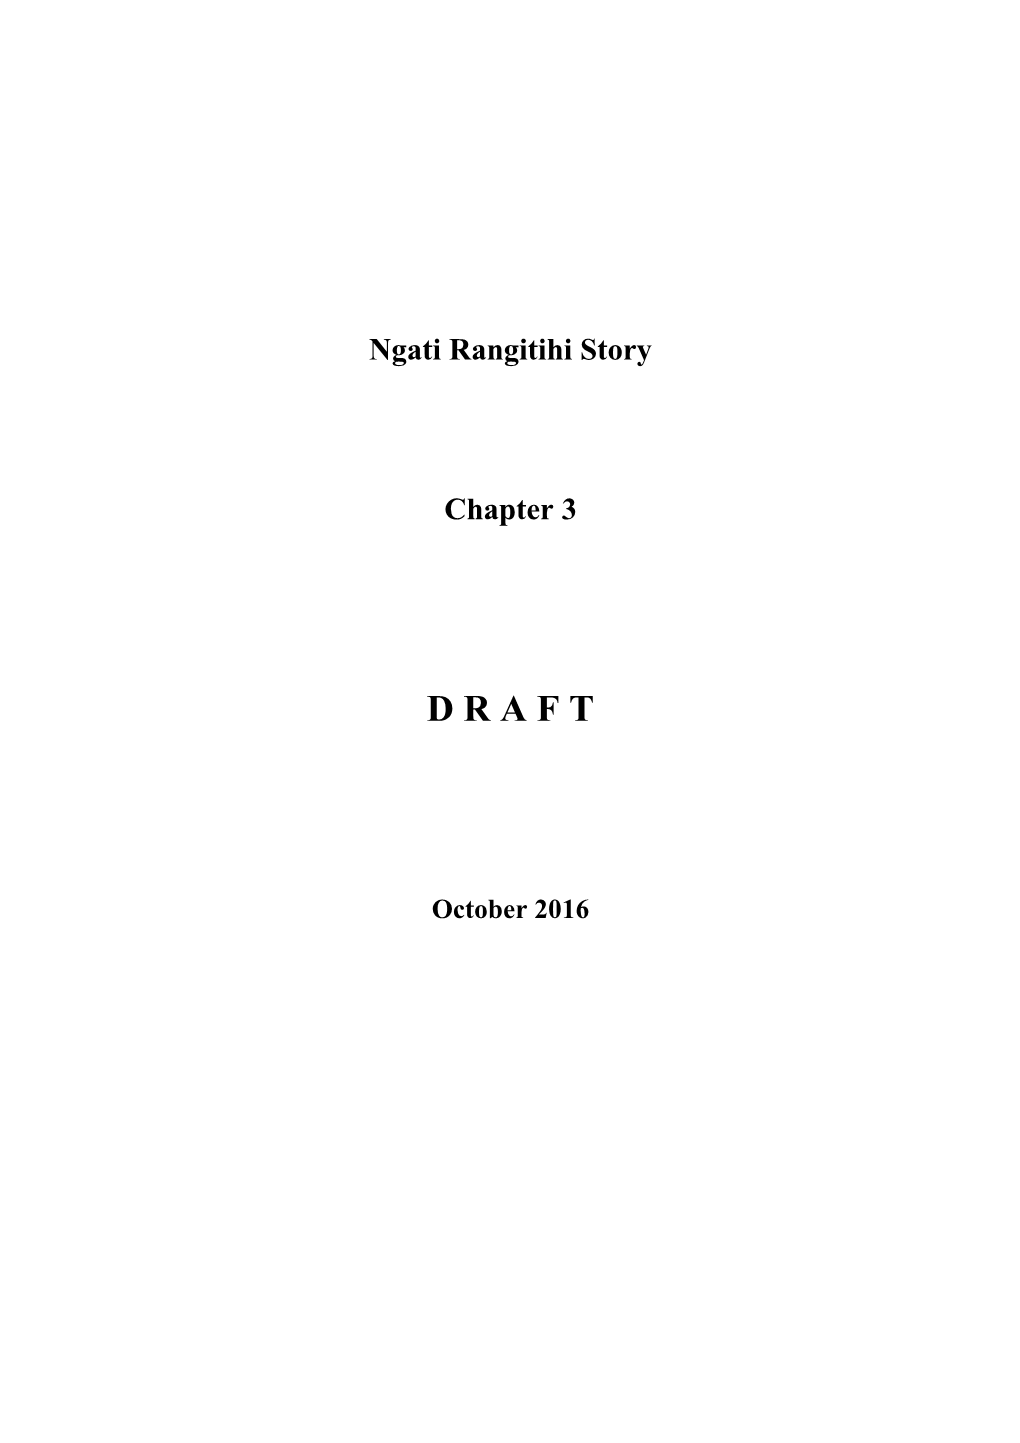 Ngati Rangitihi Story Chapter 3